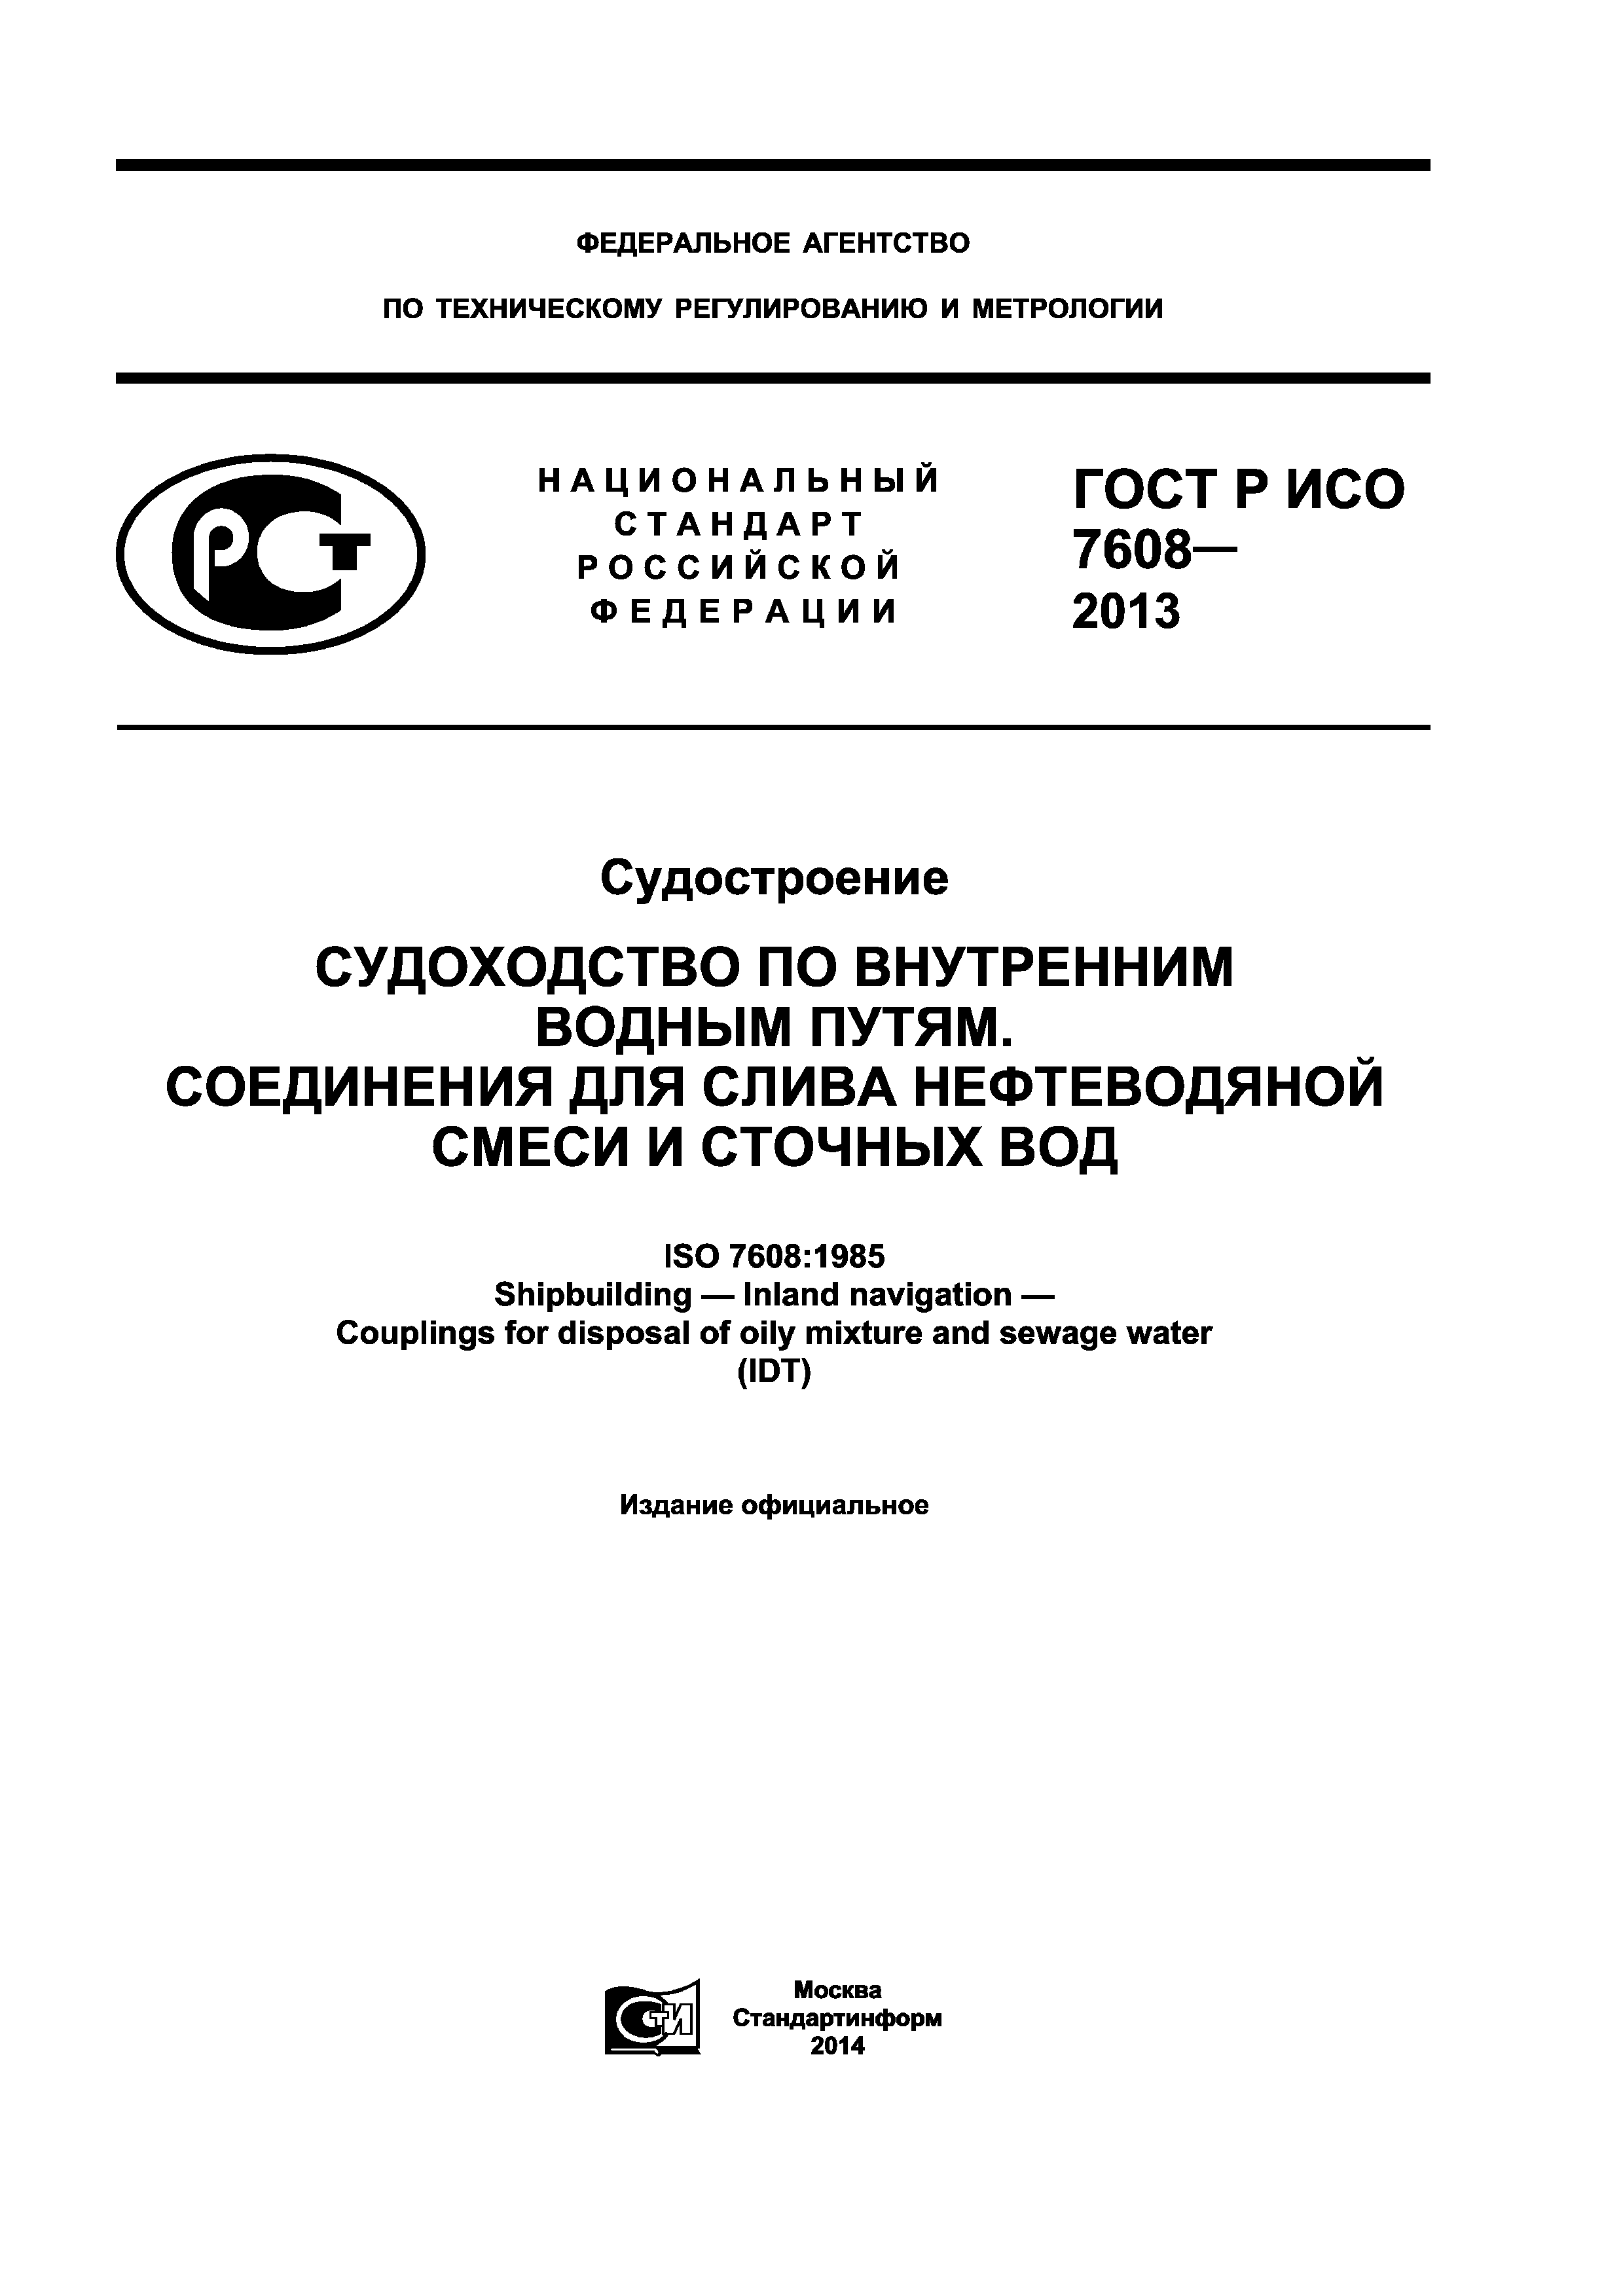 ГОСТ Р ИСО 7608-2013